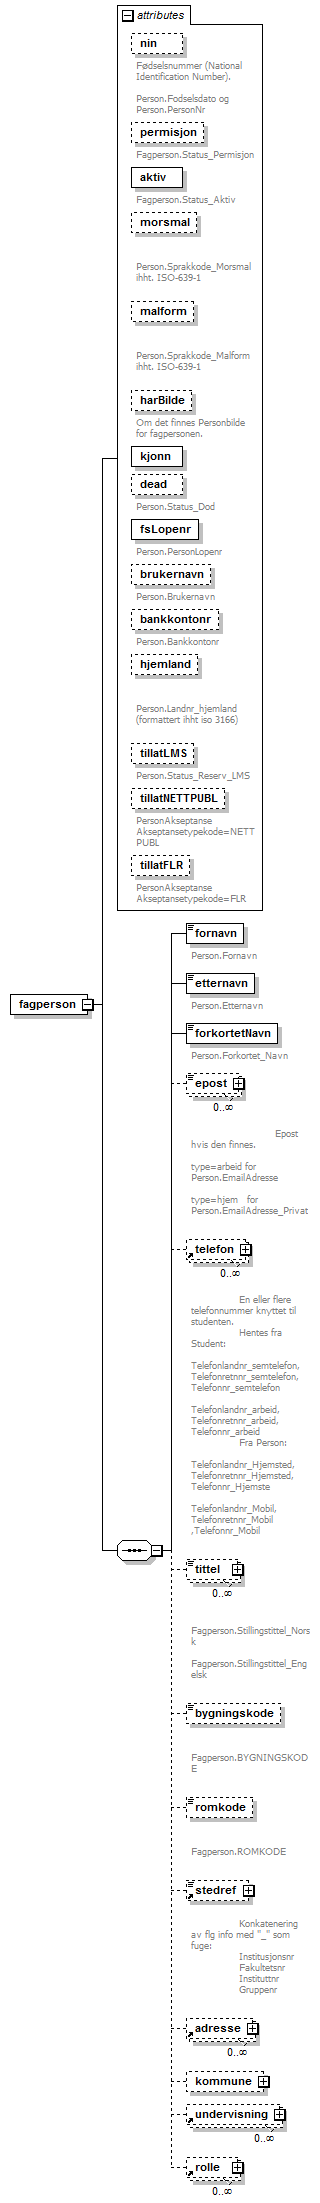 bas_diagrams/bas_p12.png